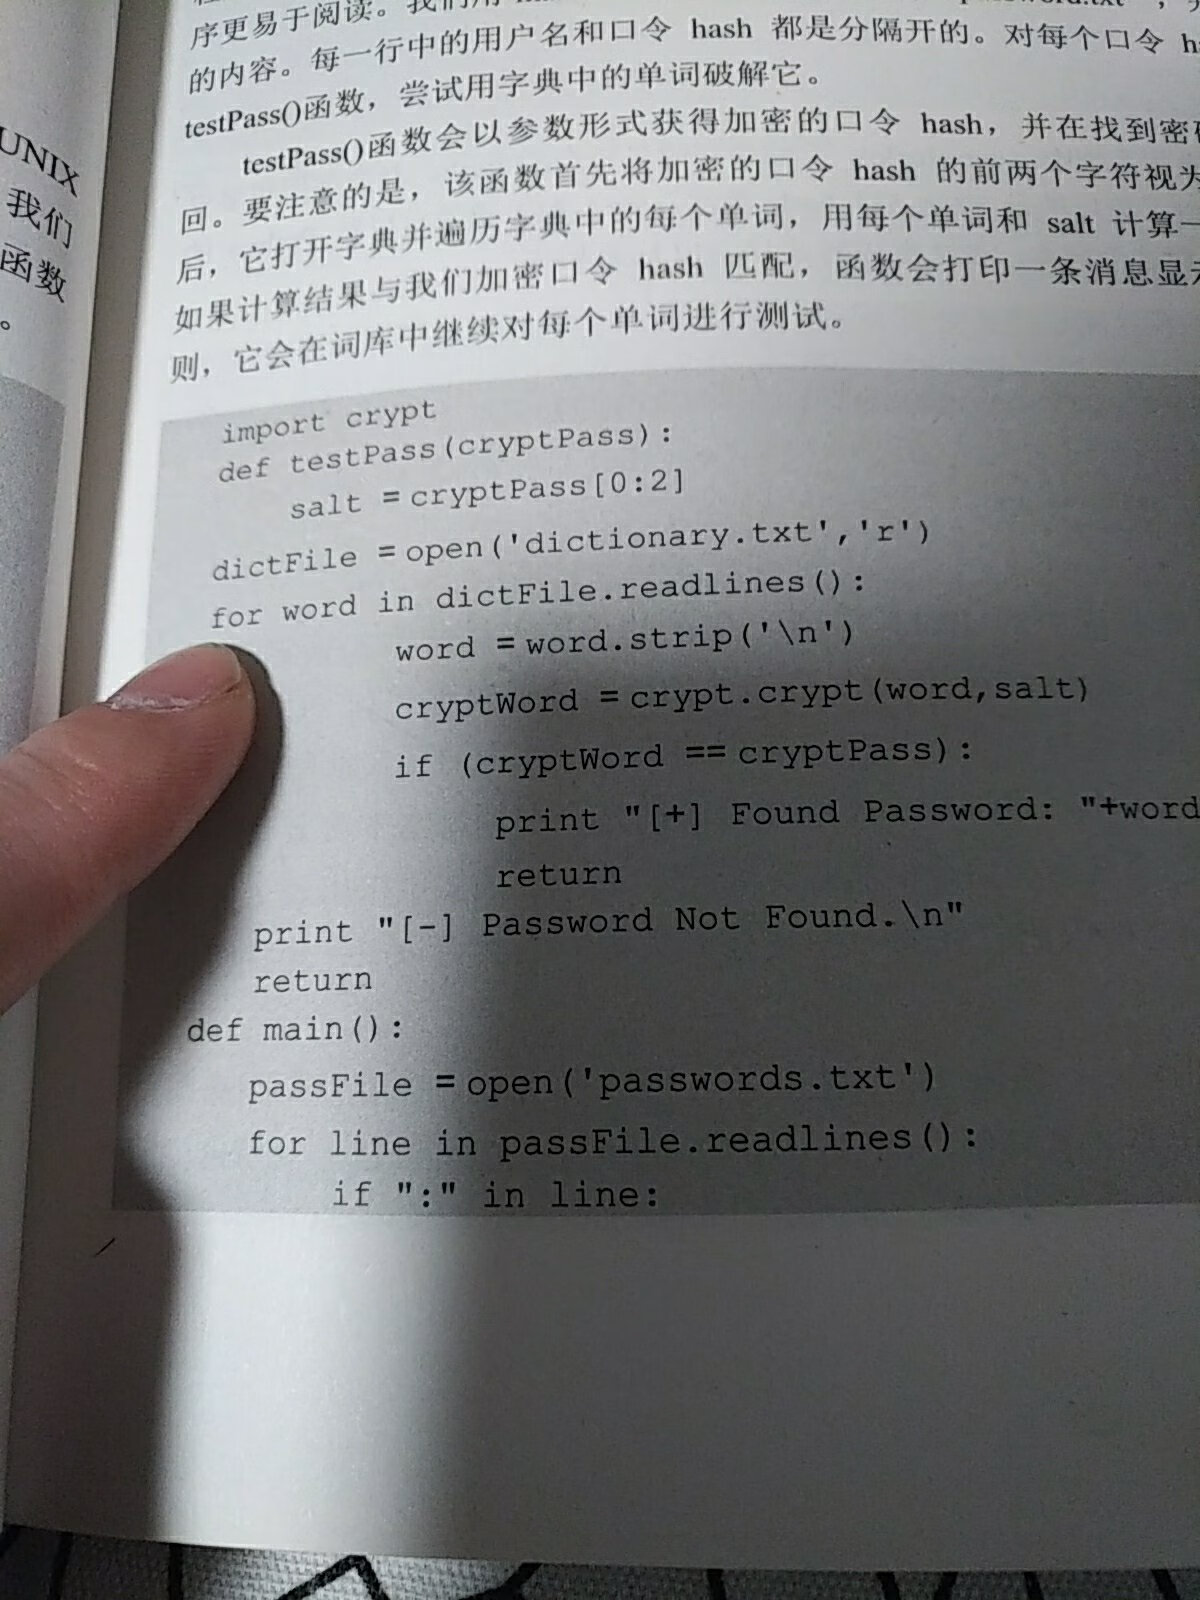 很明显的缩进错误，这本书很没有诚意呀，python本来就是一个用游标卡尺才能写的语言，怎么会出现这么低级的错误呢？？？